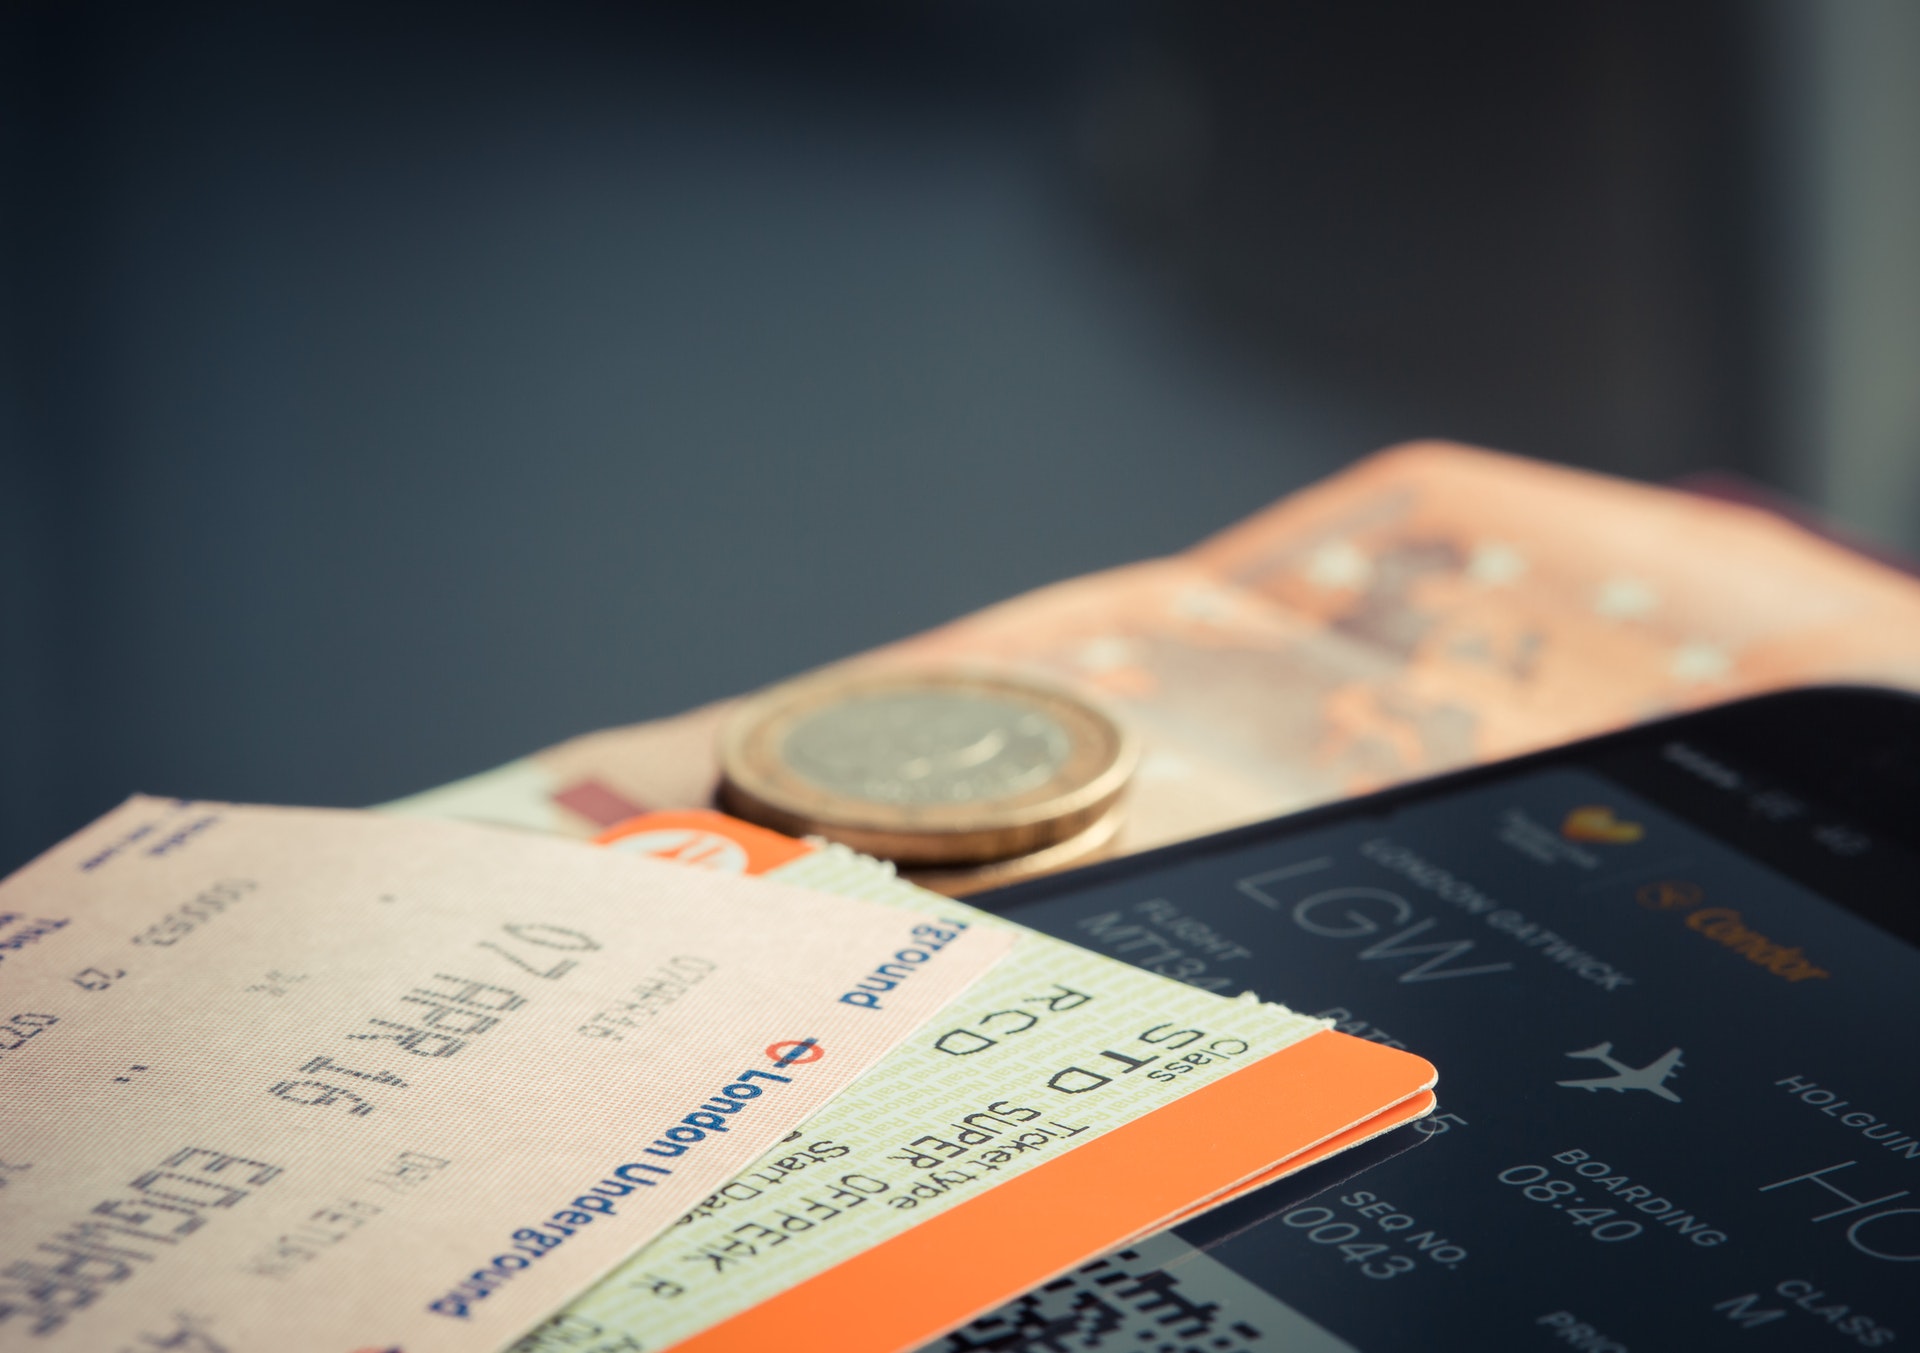 Duas passagens aéreas com uma moeda e nota de dinheiro perto. Imagem ilustrativa do texto dicas de empreendimentos.